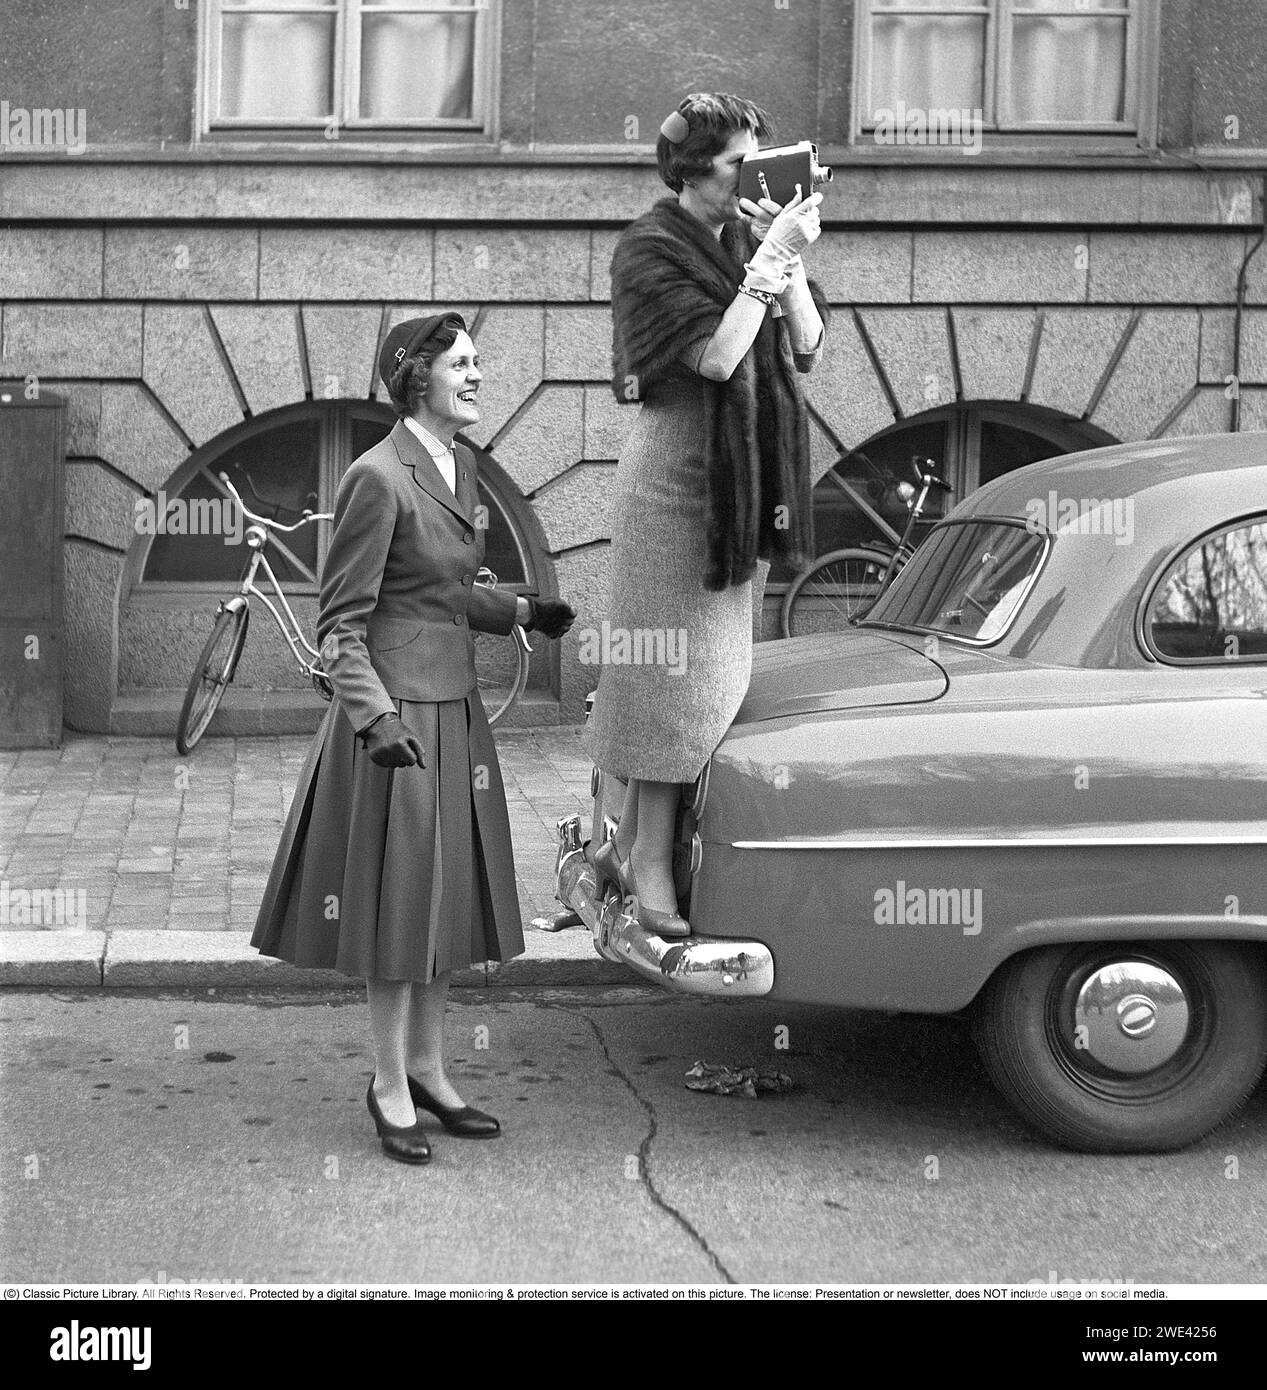 Negli anni '1950 Una donna anziana con una videocamera si è alzata sul paraurti di un'auto per avere una visione migliore di ciò che sta filmando. Una donna più giovane sta accanto ad essa, sembra felice. Sono parenti di uno degli studenti completati di recente che stanno festeggiando di aver superato l'esame di immatricolazione e stanno camminando lungo una strada di Stoccolma. 1954. Svahn rif. SVA2 Foto Stock